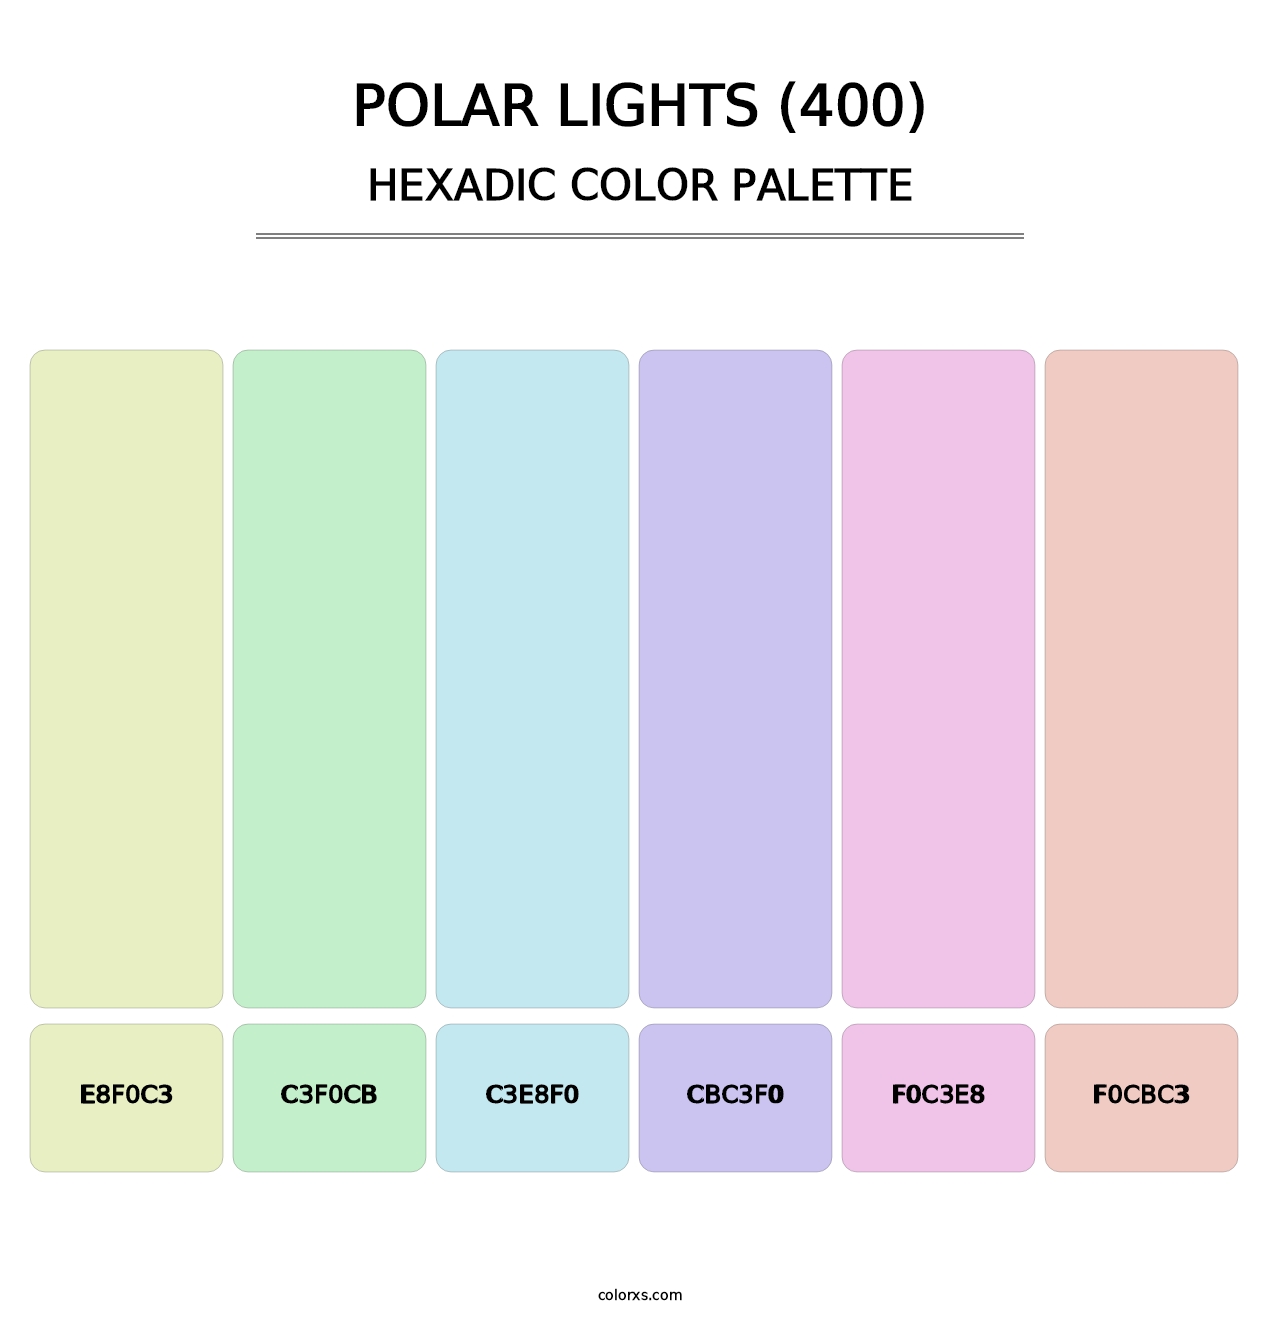 Polar Lights (400) - Hexadic Color Palette